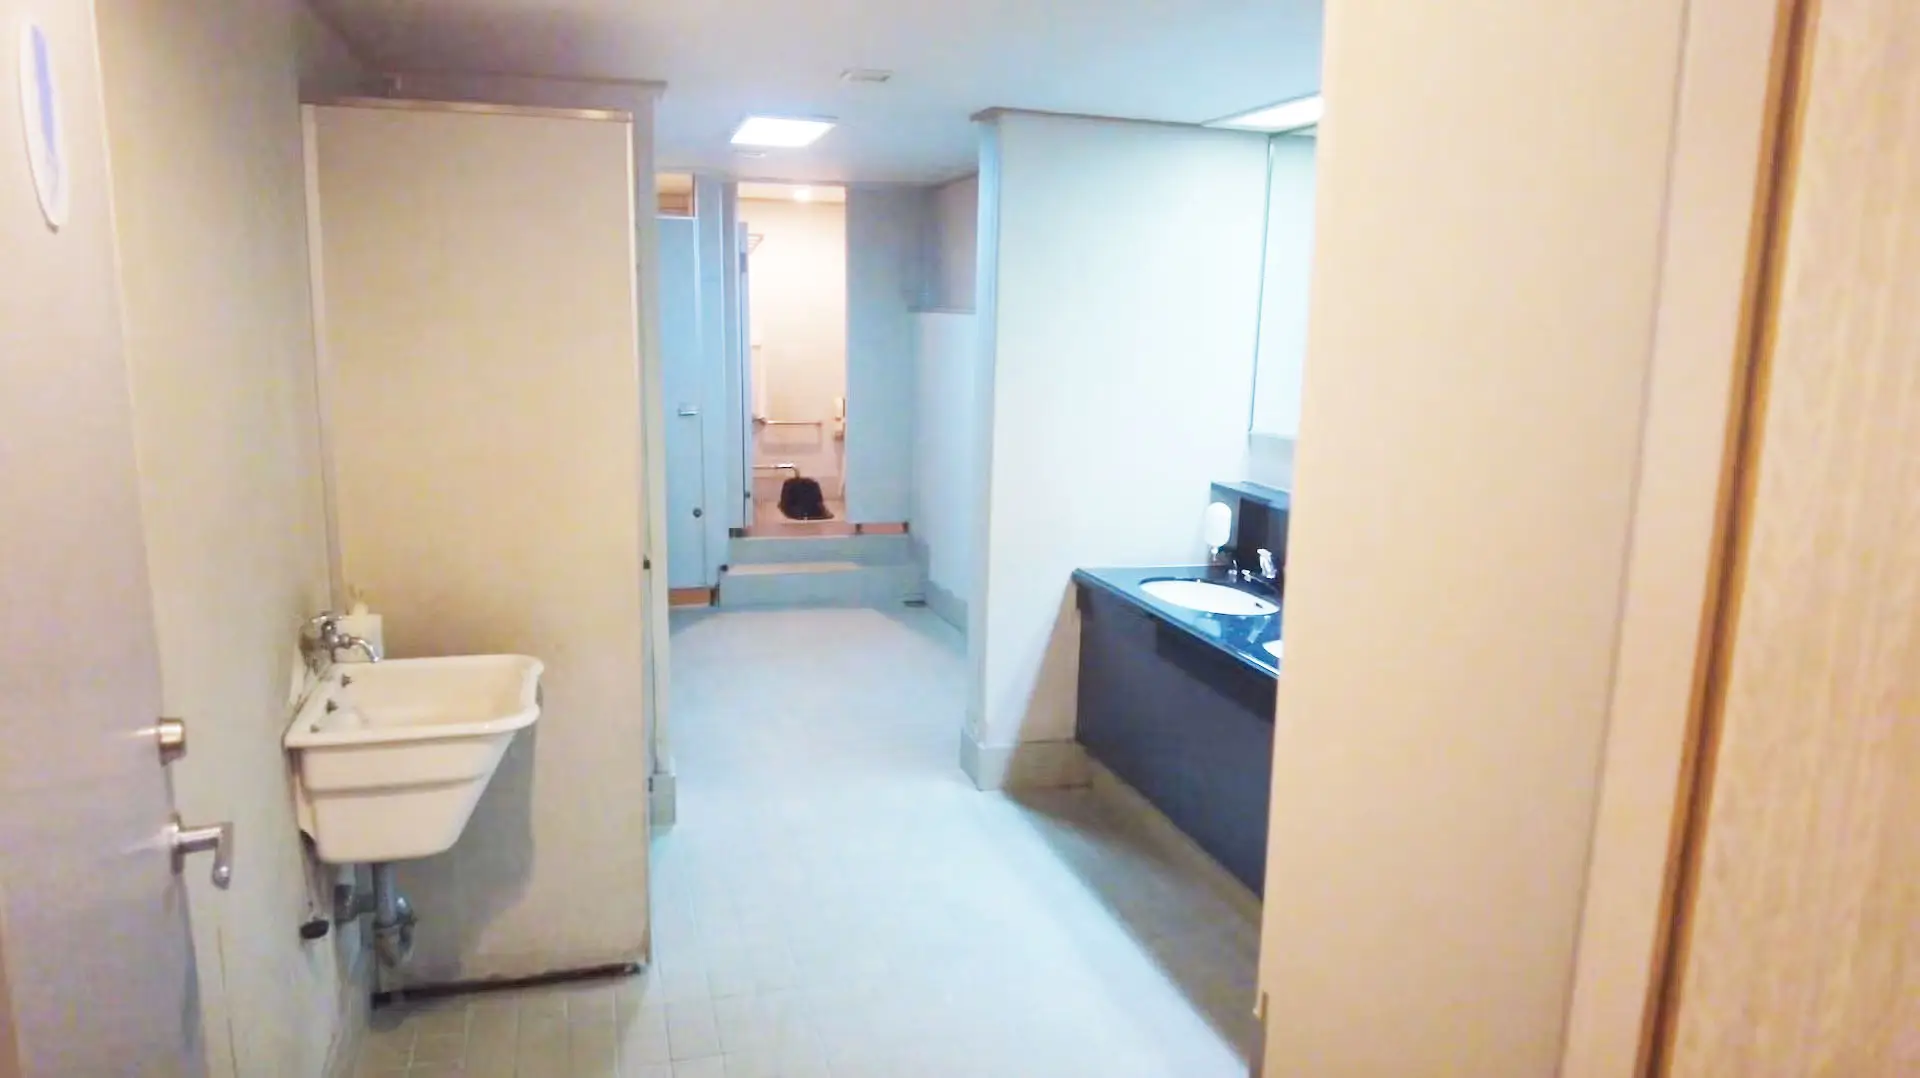 折田汽船屋久岛2号渡轮上的洗手间设施。